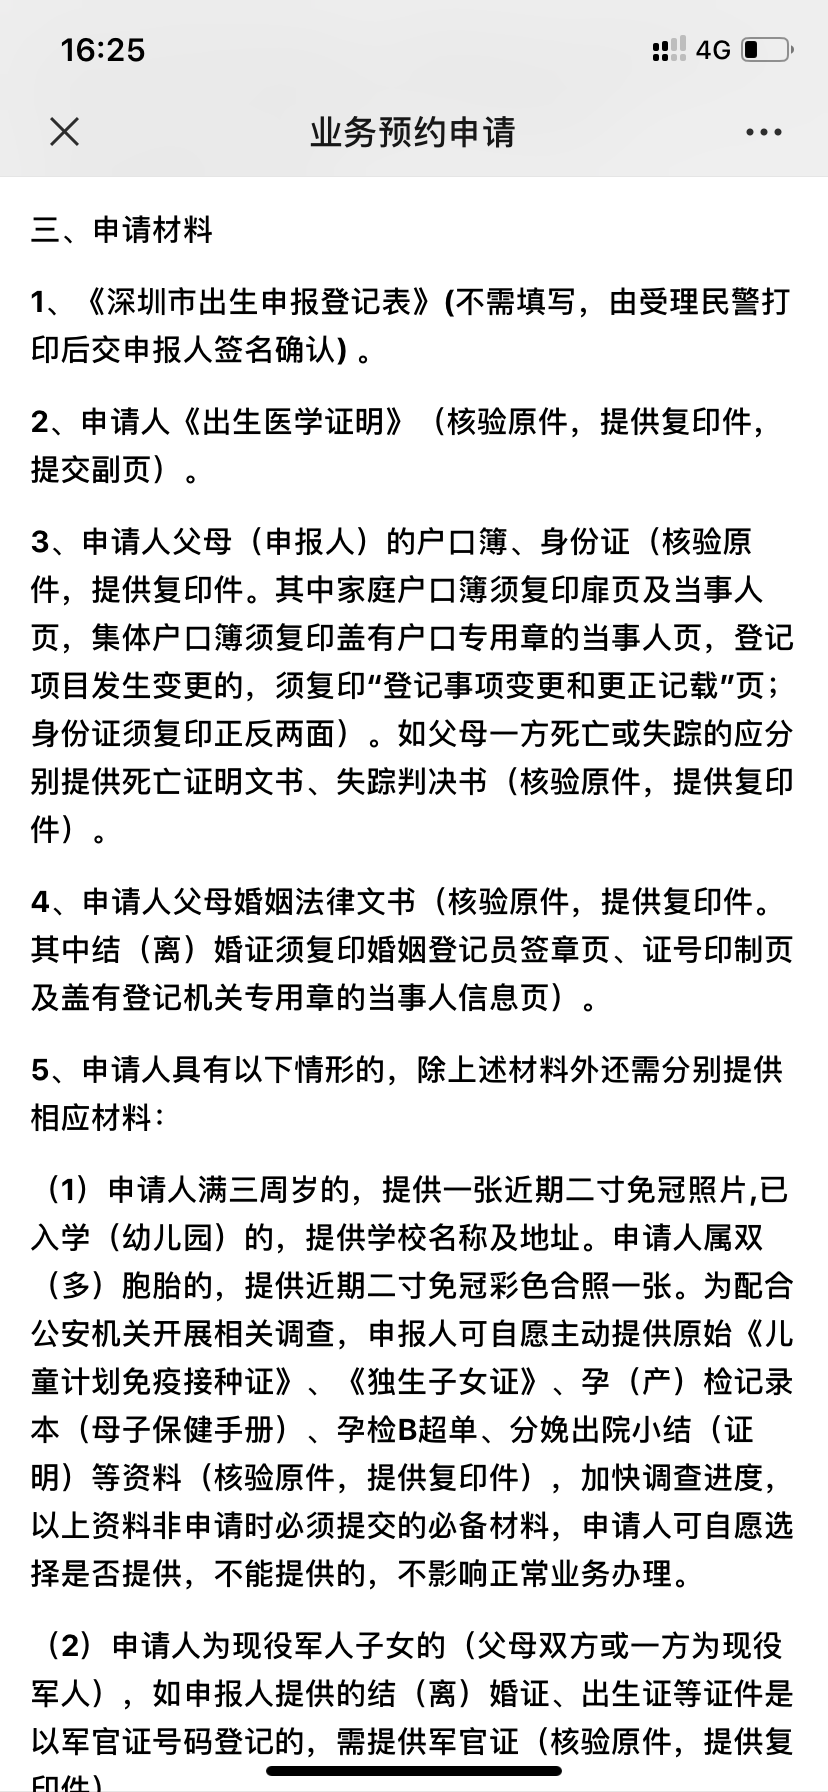 美宝深圳上户口攻略—2020年最新篇。